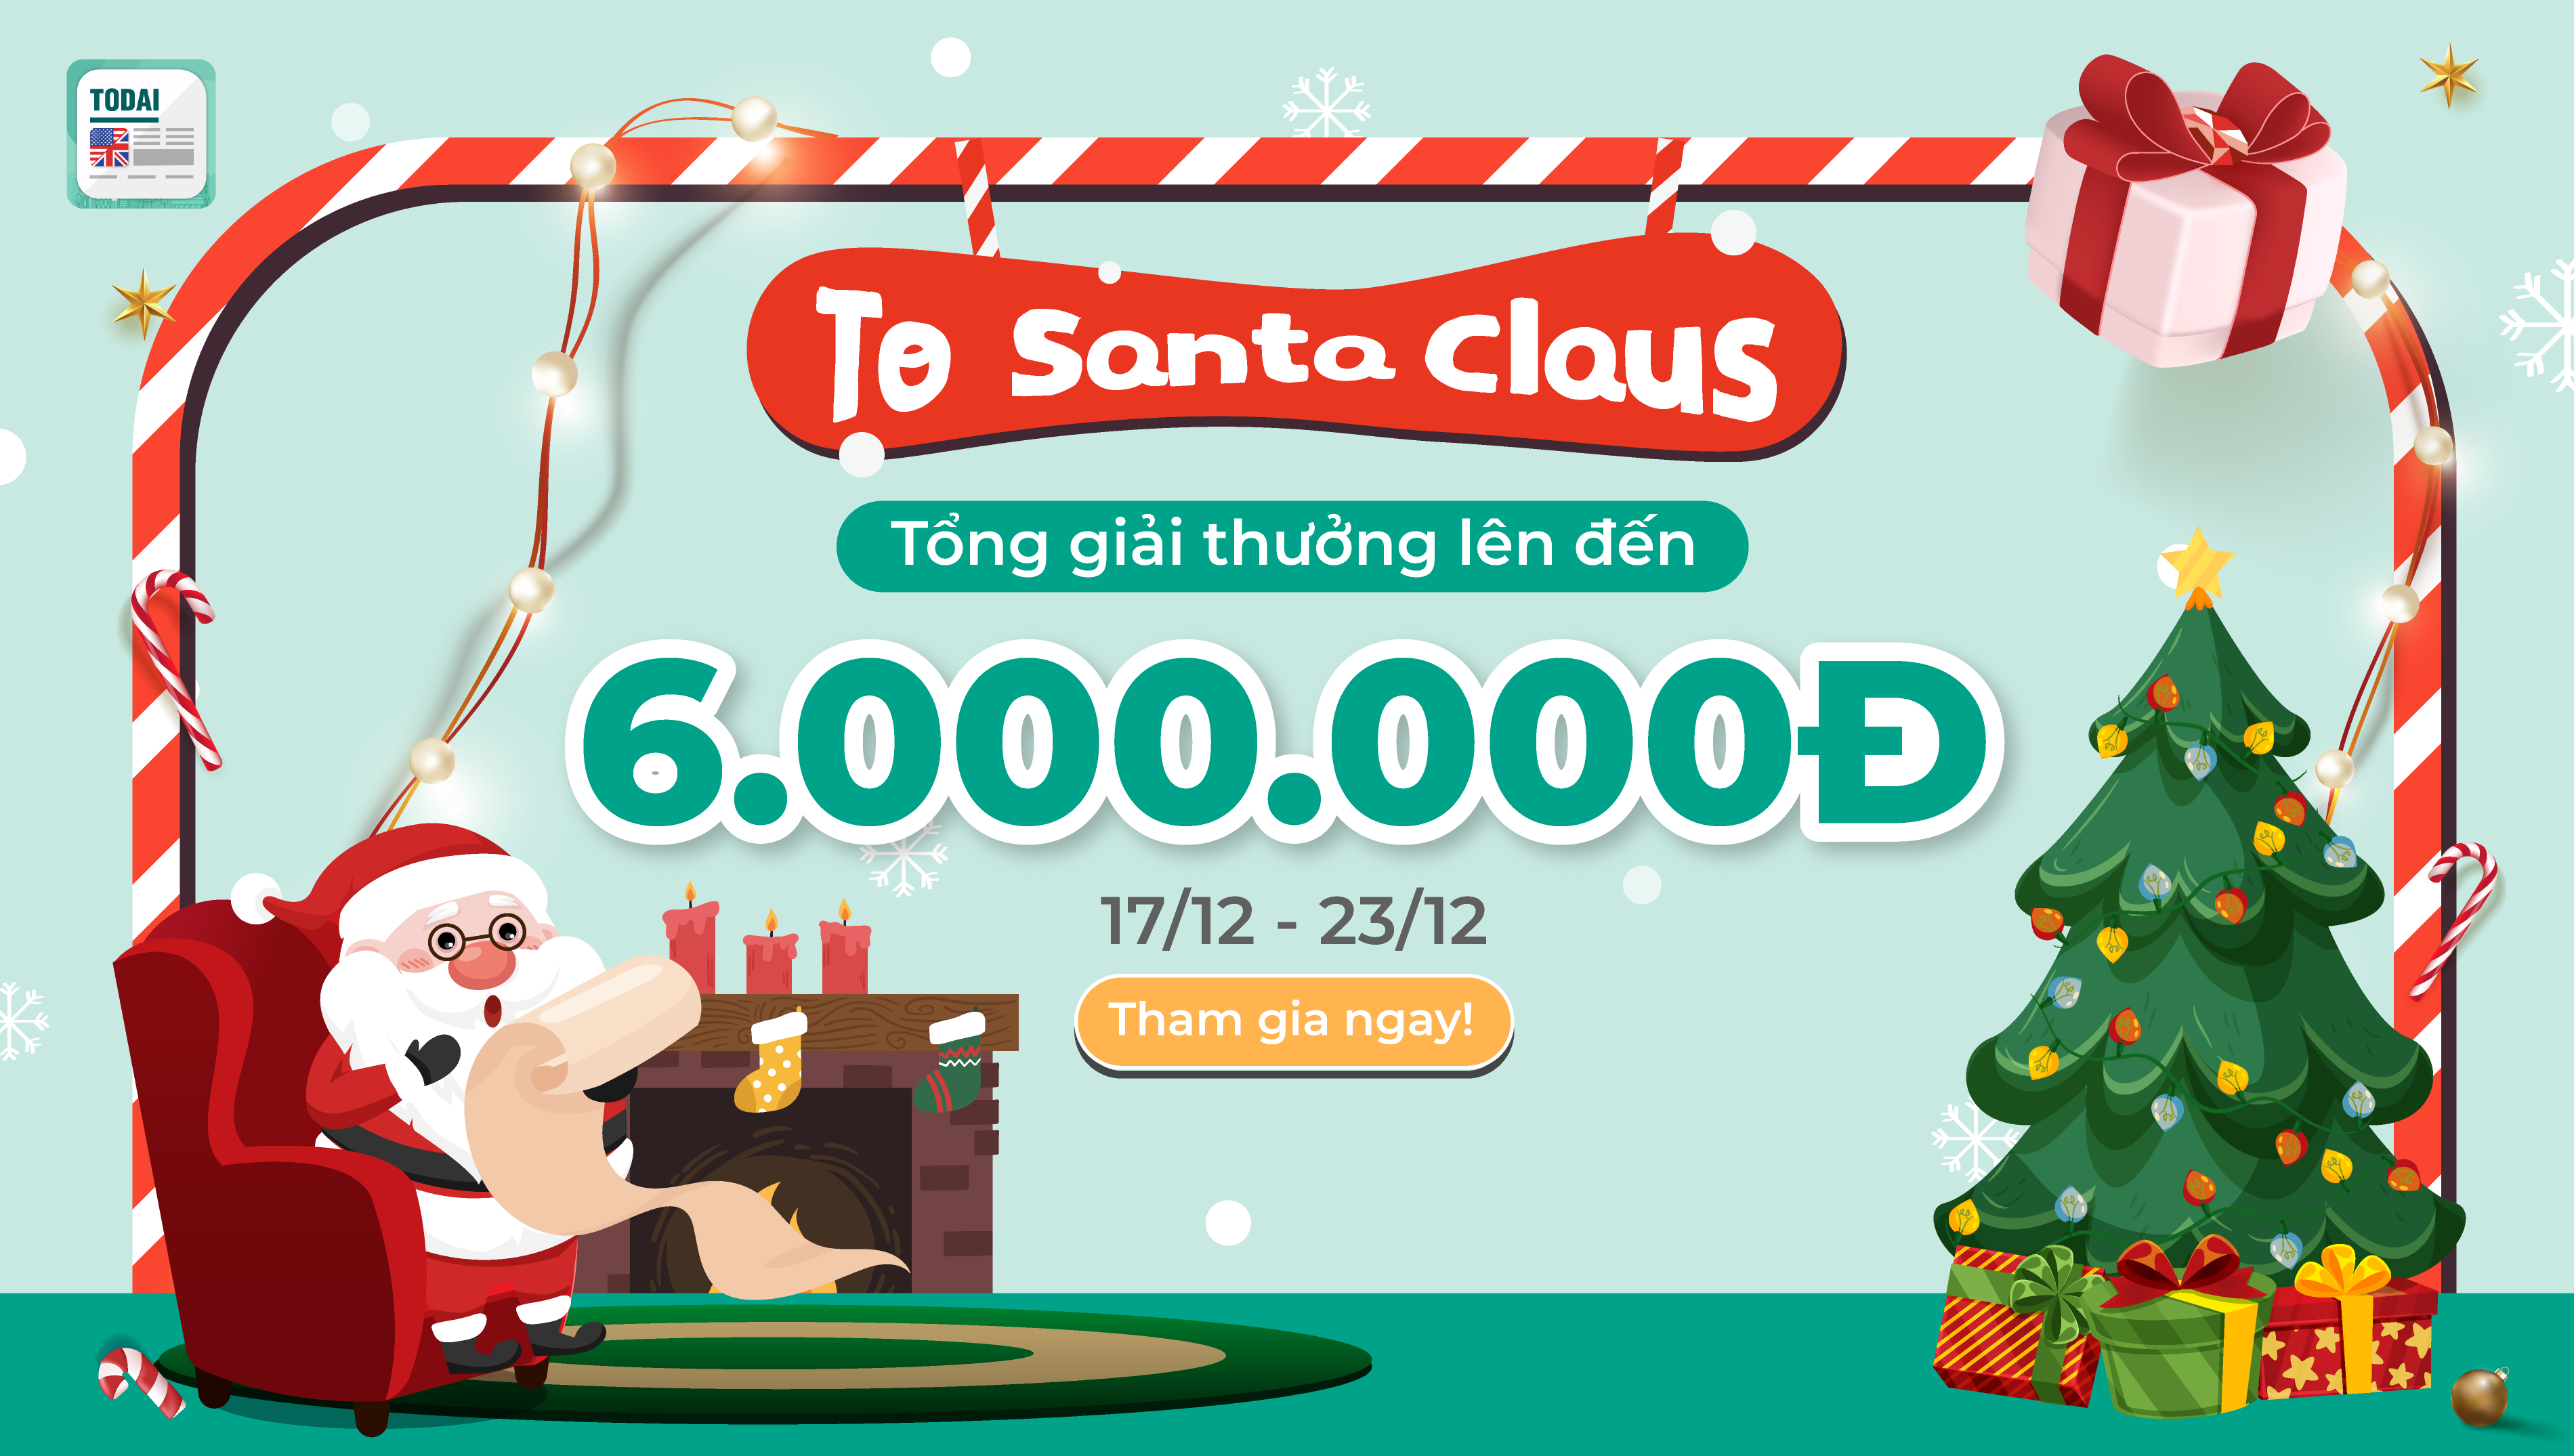 Giới thiệu Event hot nhất mùa lễ Giáng sinh 2022: "To Santa Claus"